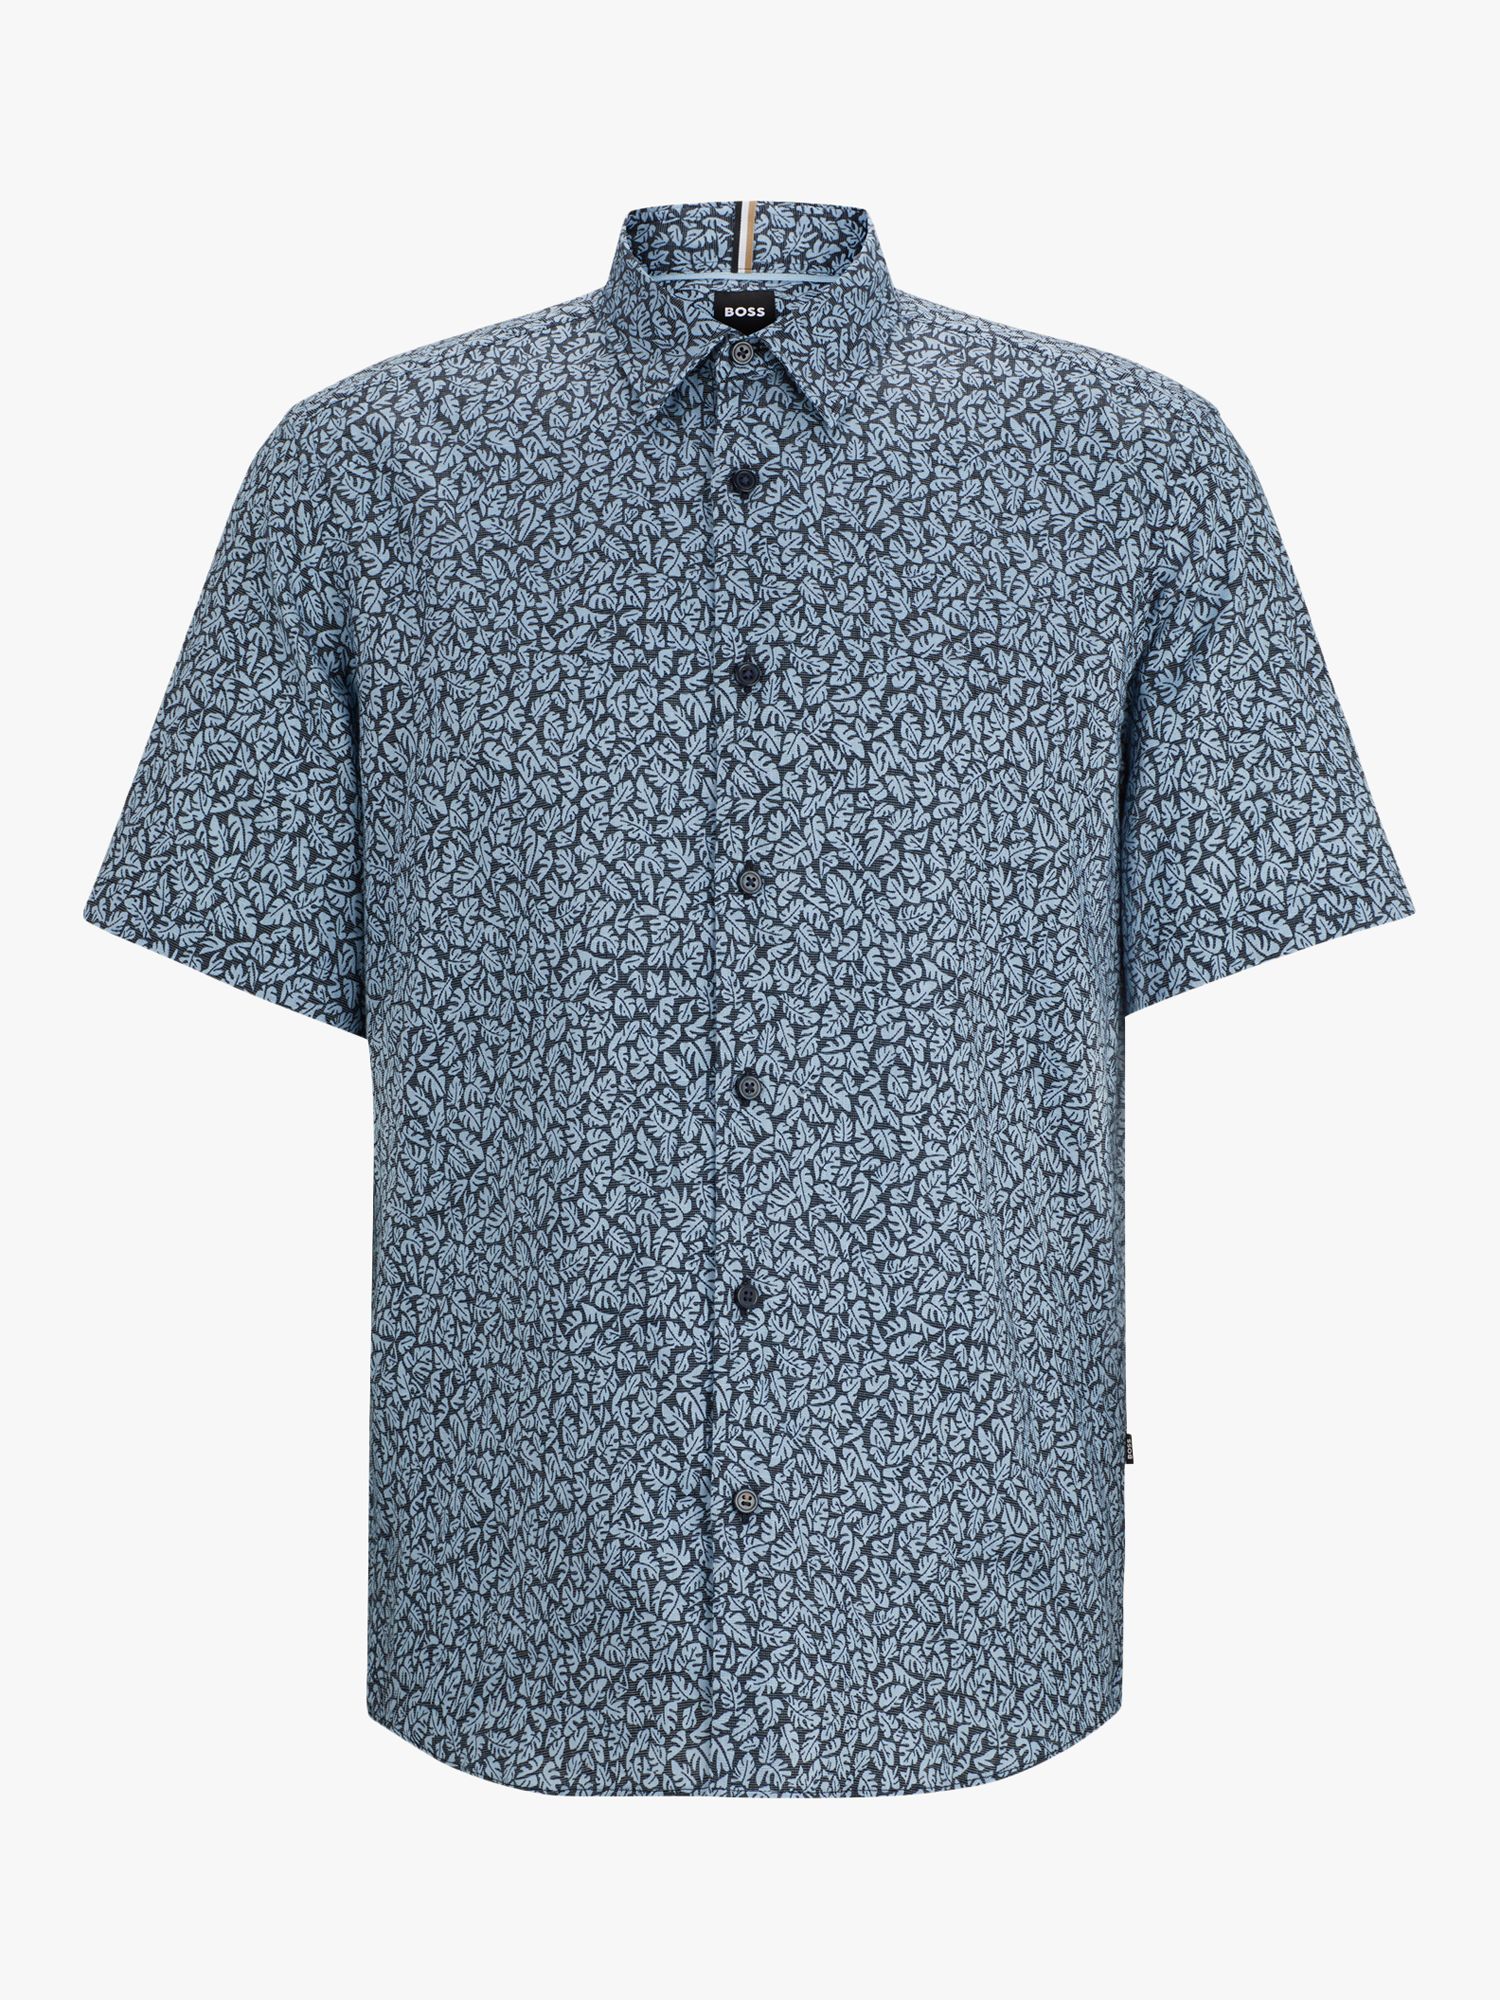 BOSS Liam Leaf Print Linen Blend Shirt, Blue, L